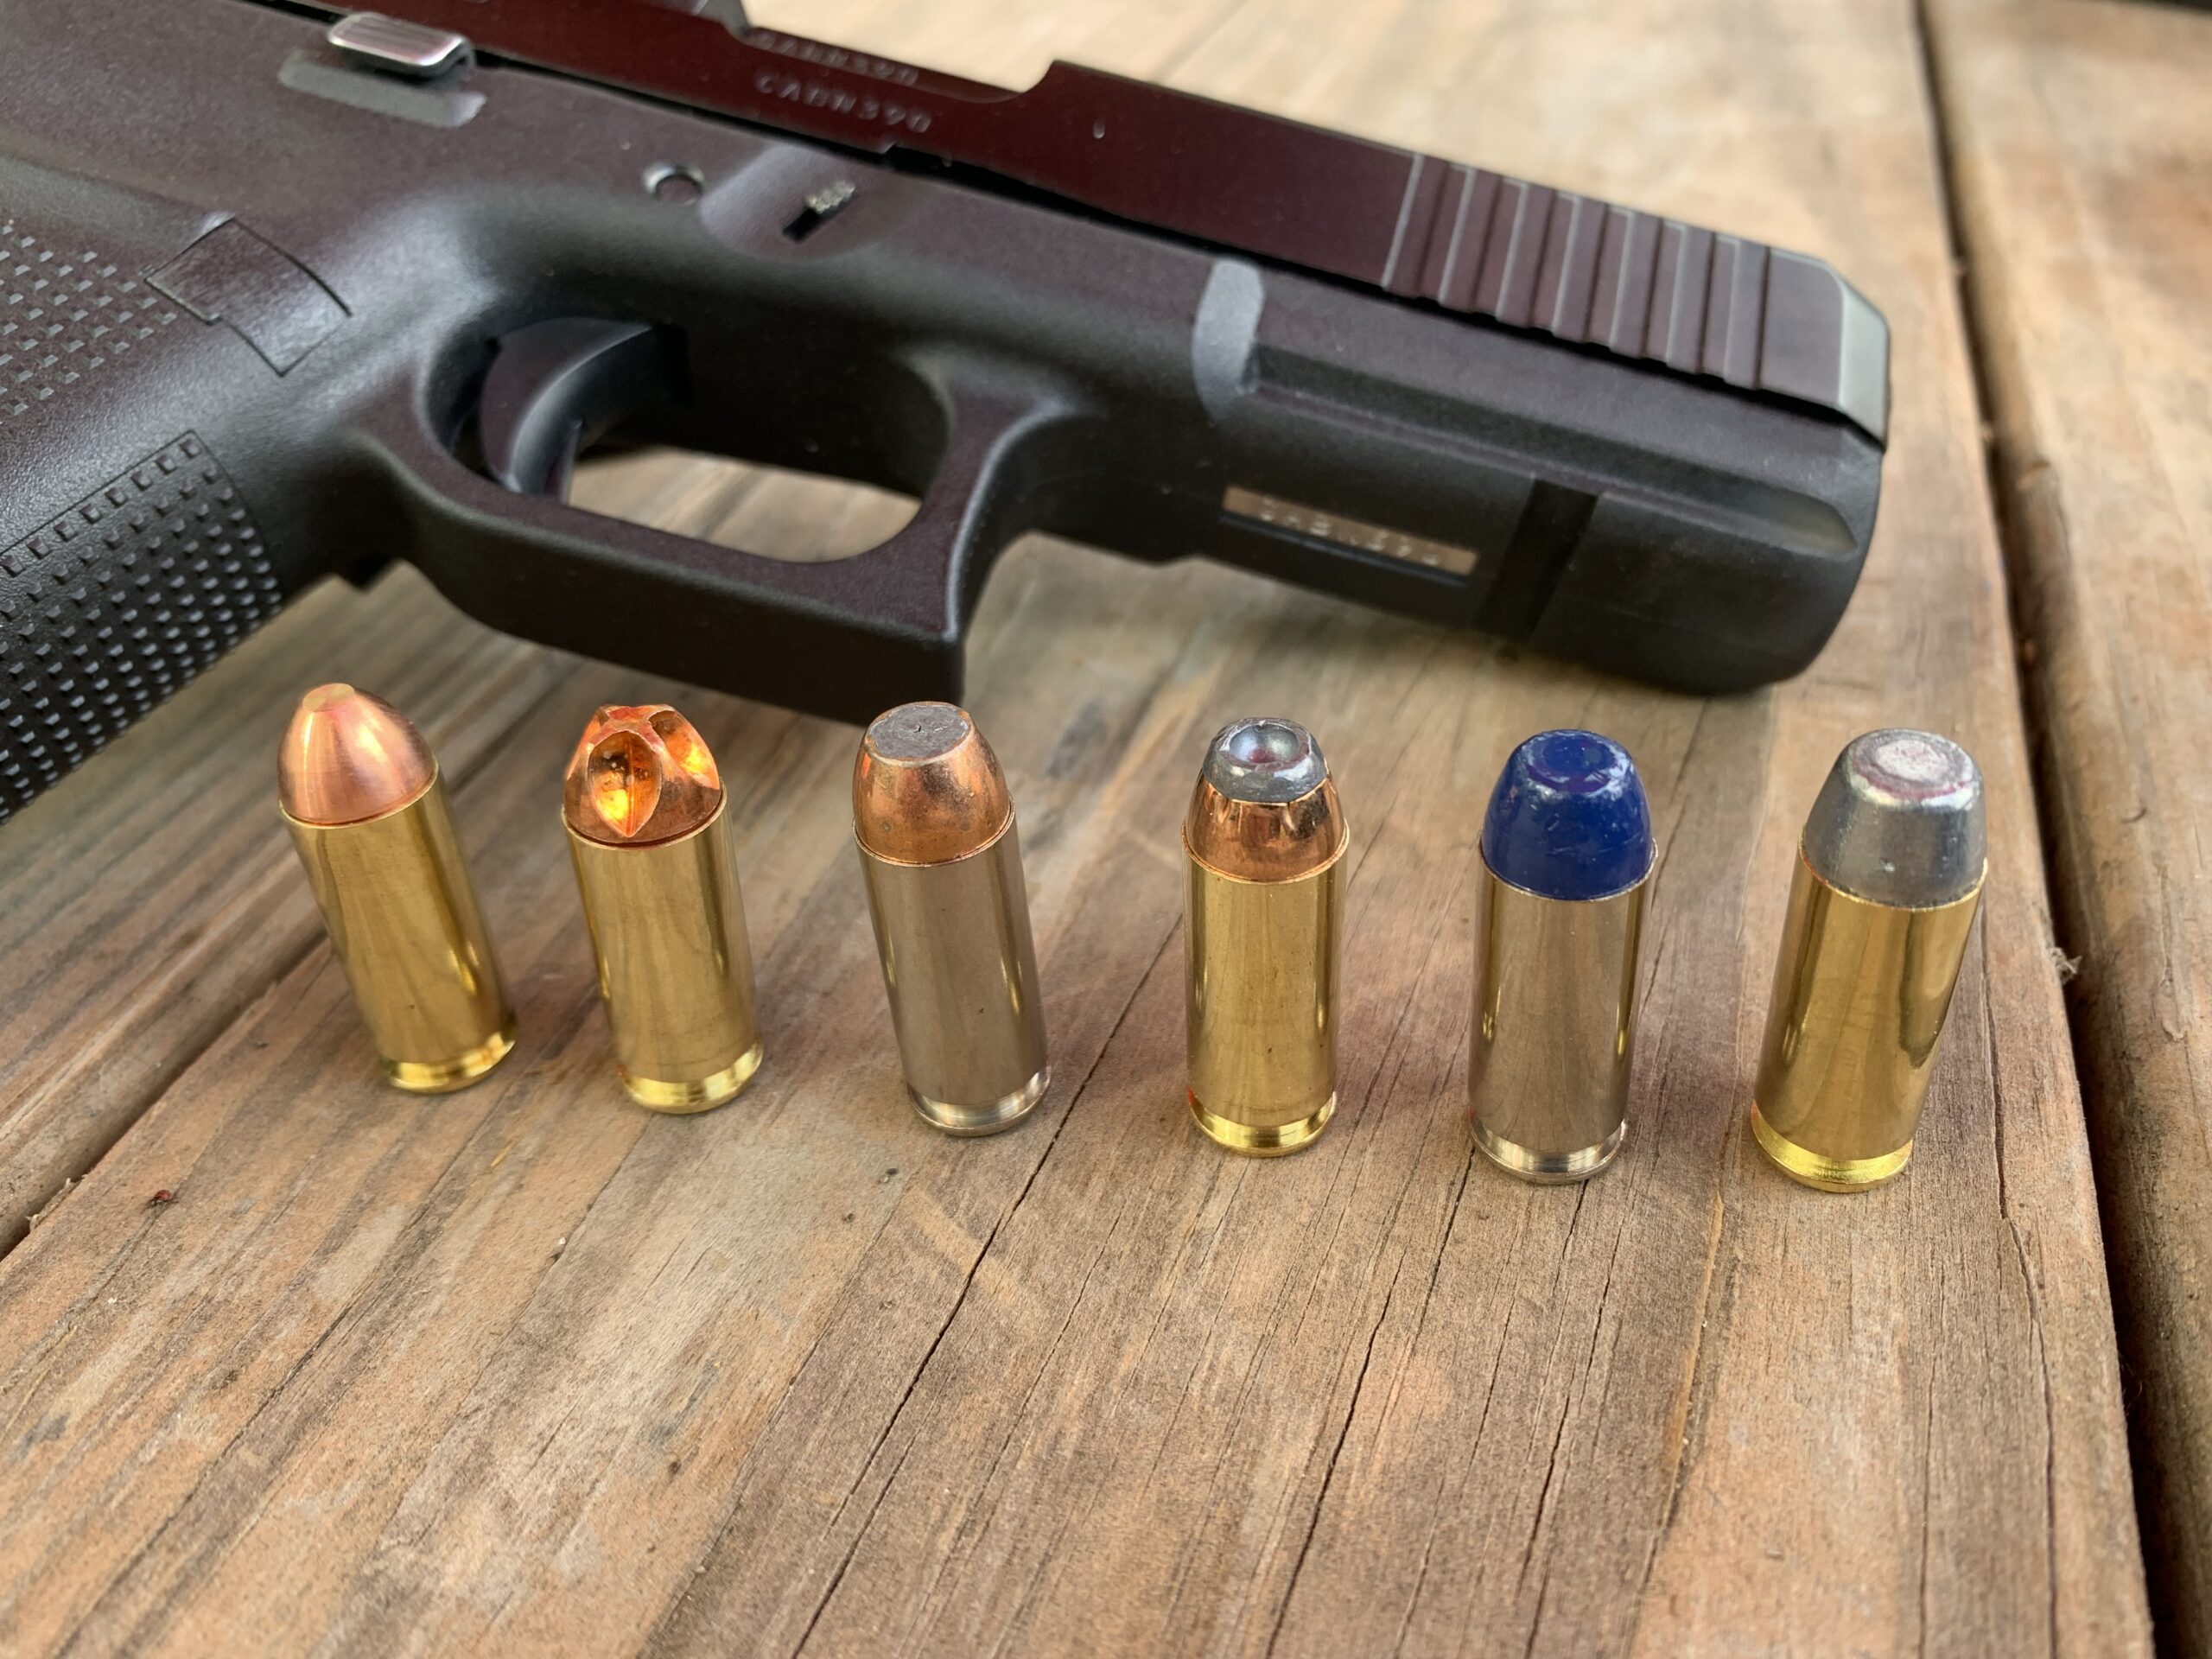 9mm vs 10mm, 10mm bear defense ammo